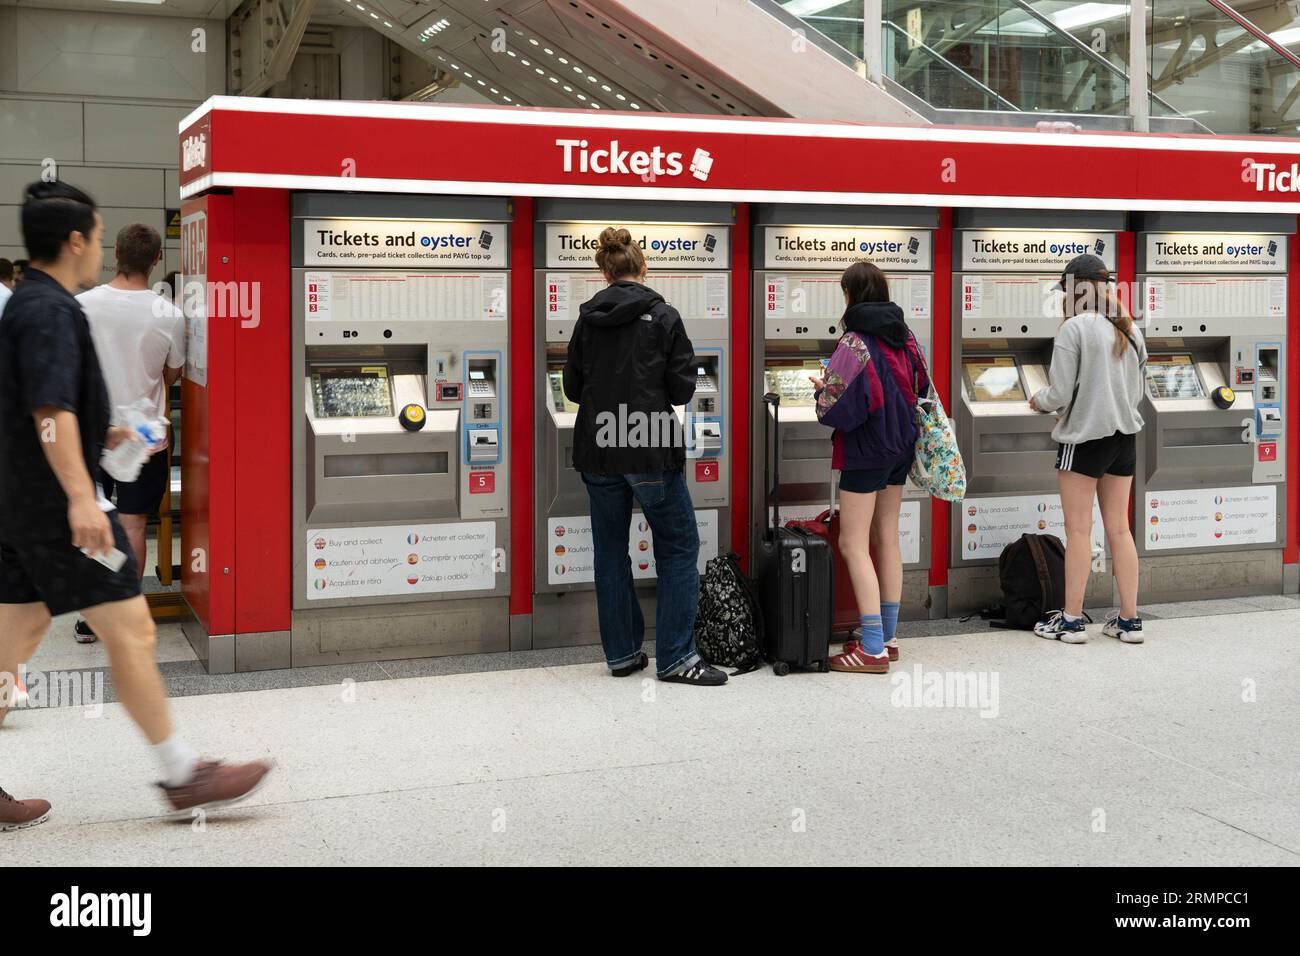 Les passagers du train achètent des billets à un distributeur de billets à Liverpool Street Station, à Londres. Thème : Prix des billets, inflation des prix, coût de la vie Banque D'Images